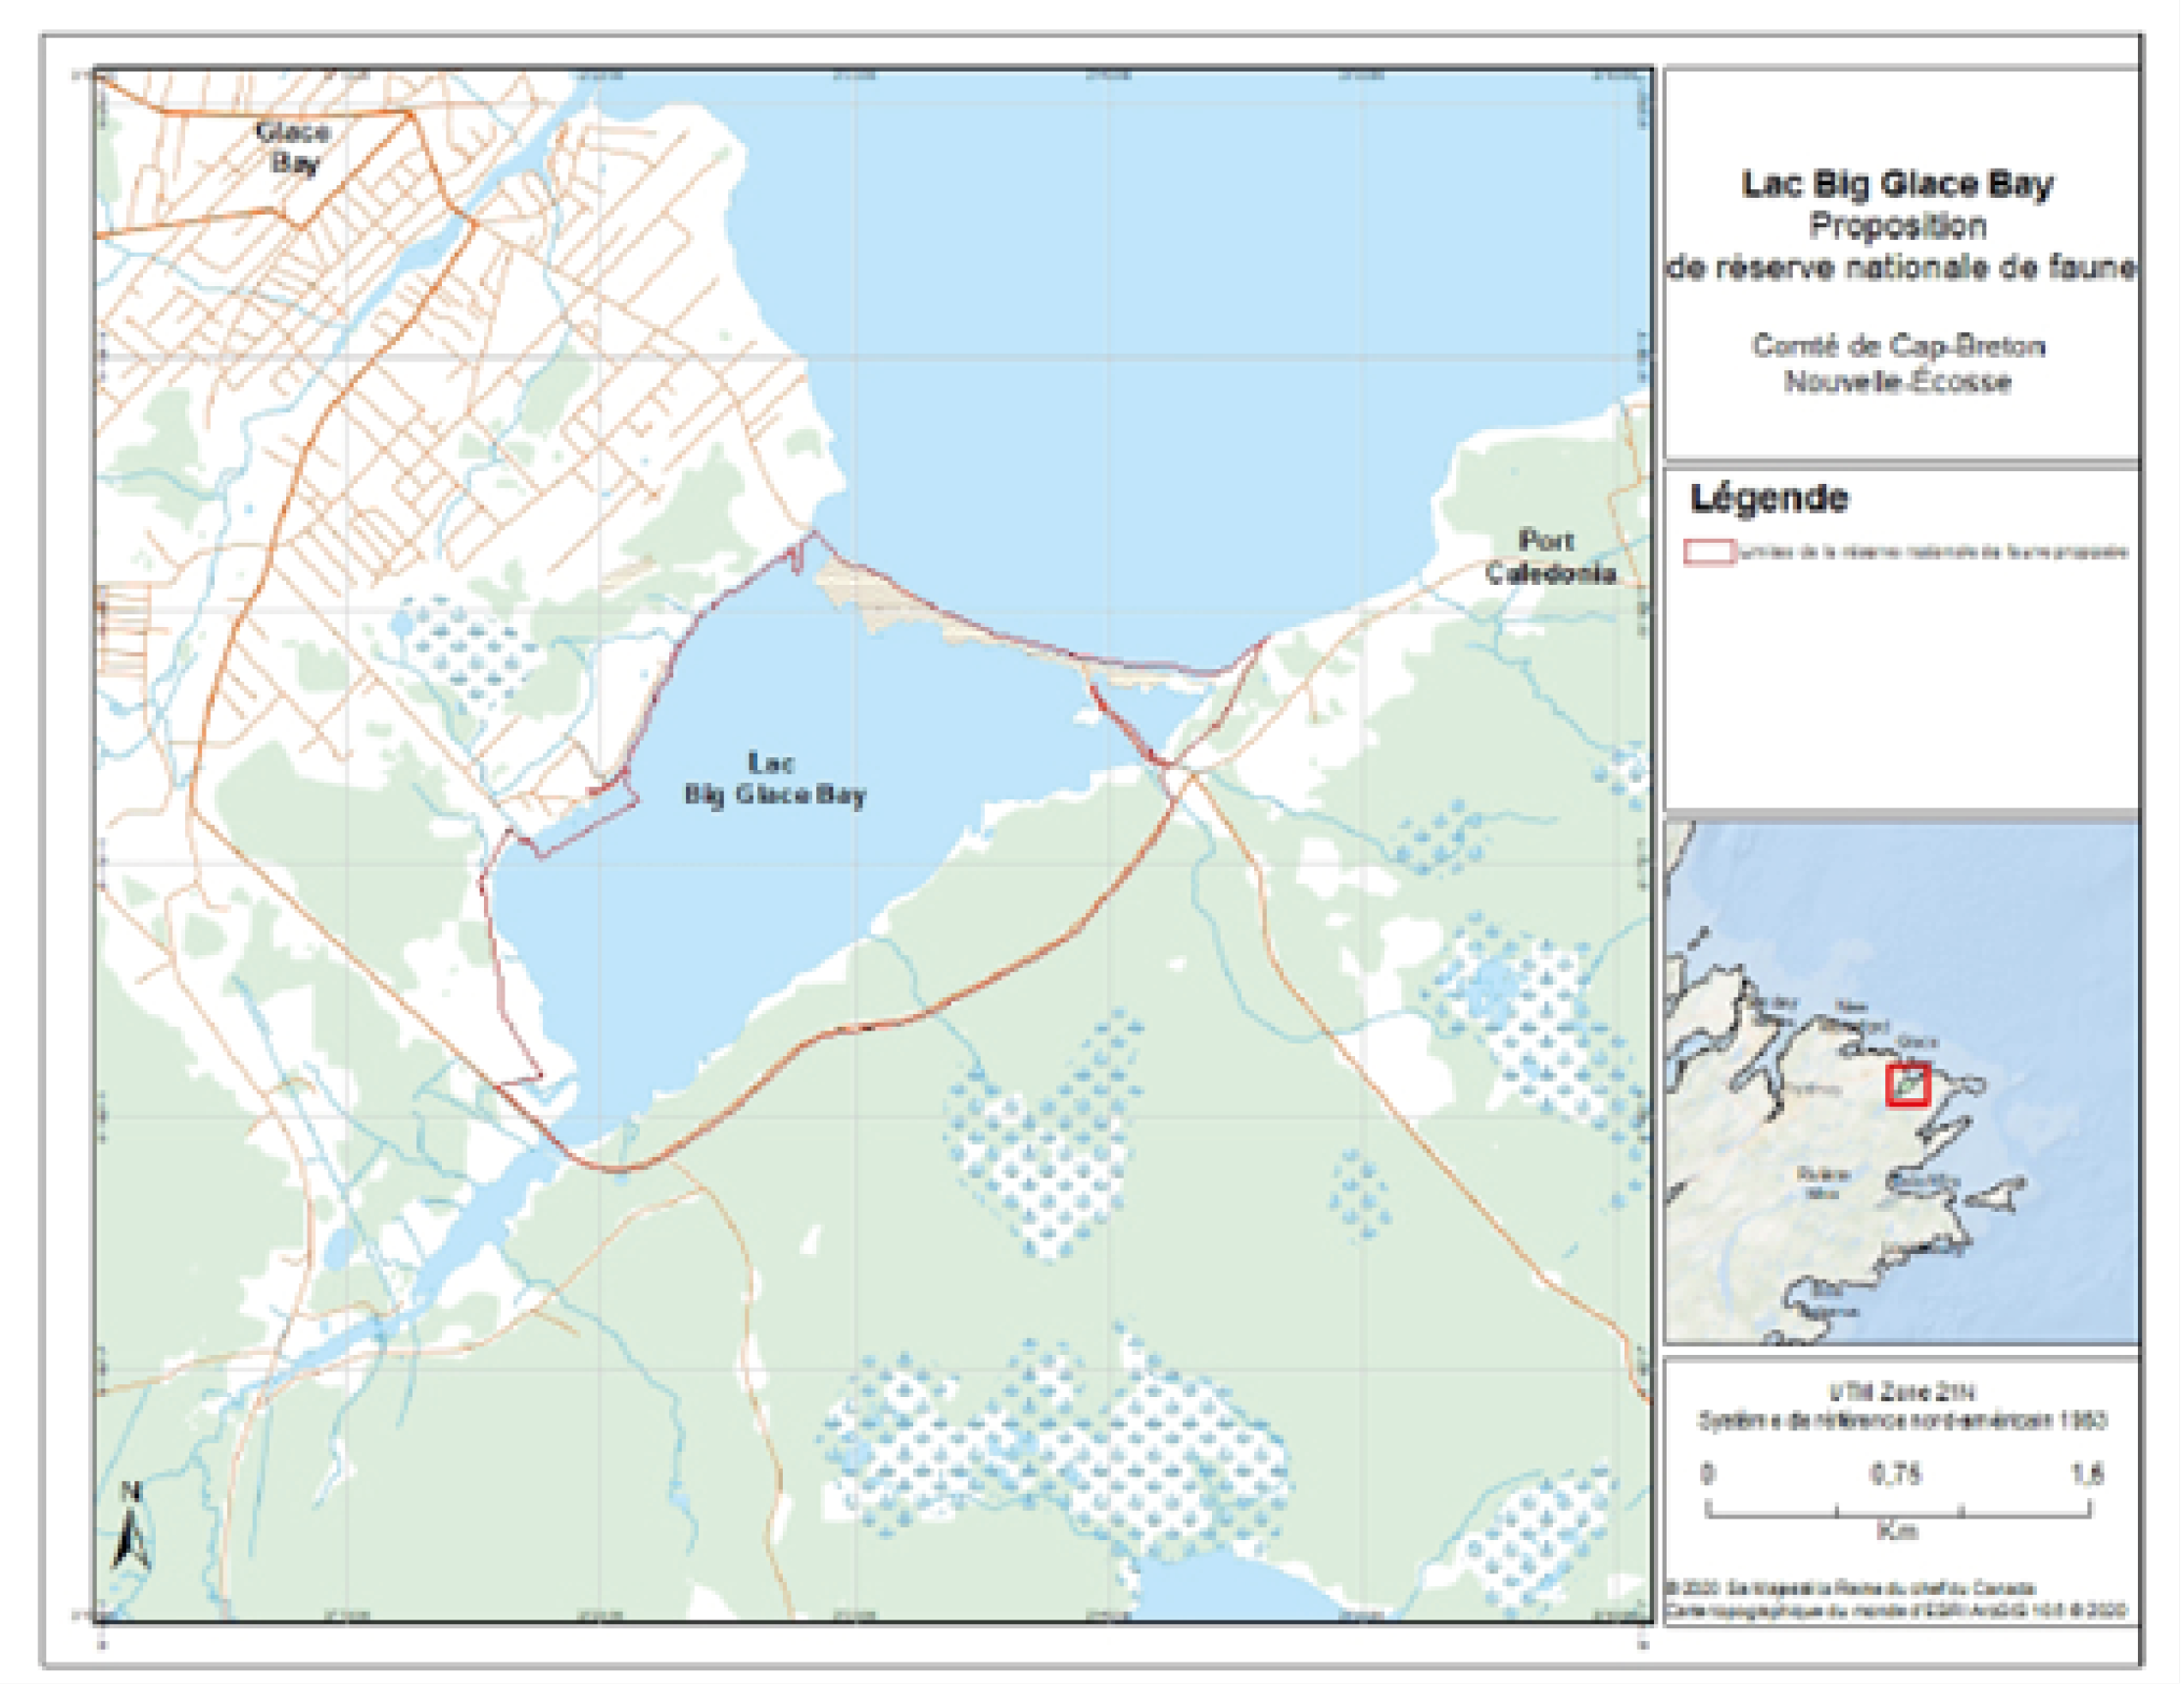 Figure 1. Carte de la réserve nationale de faune du lac Big Glace Bay